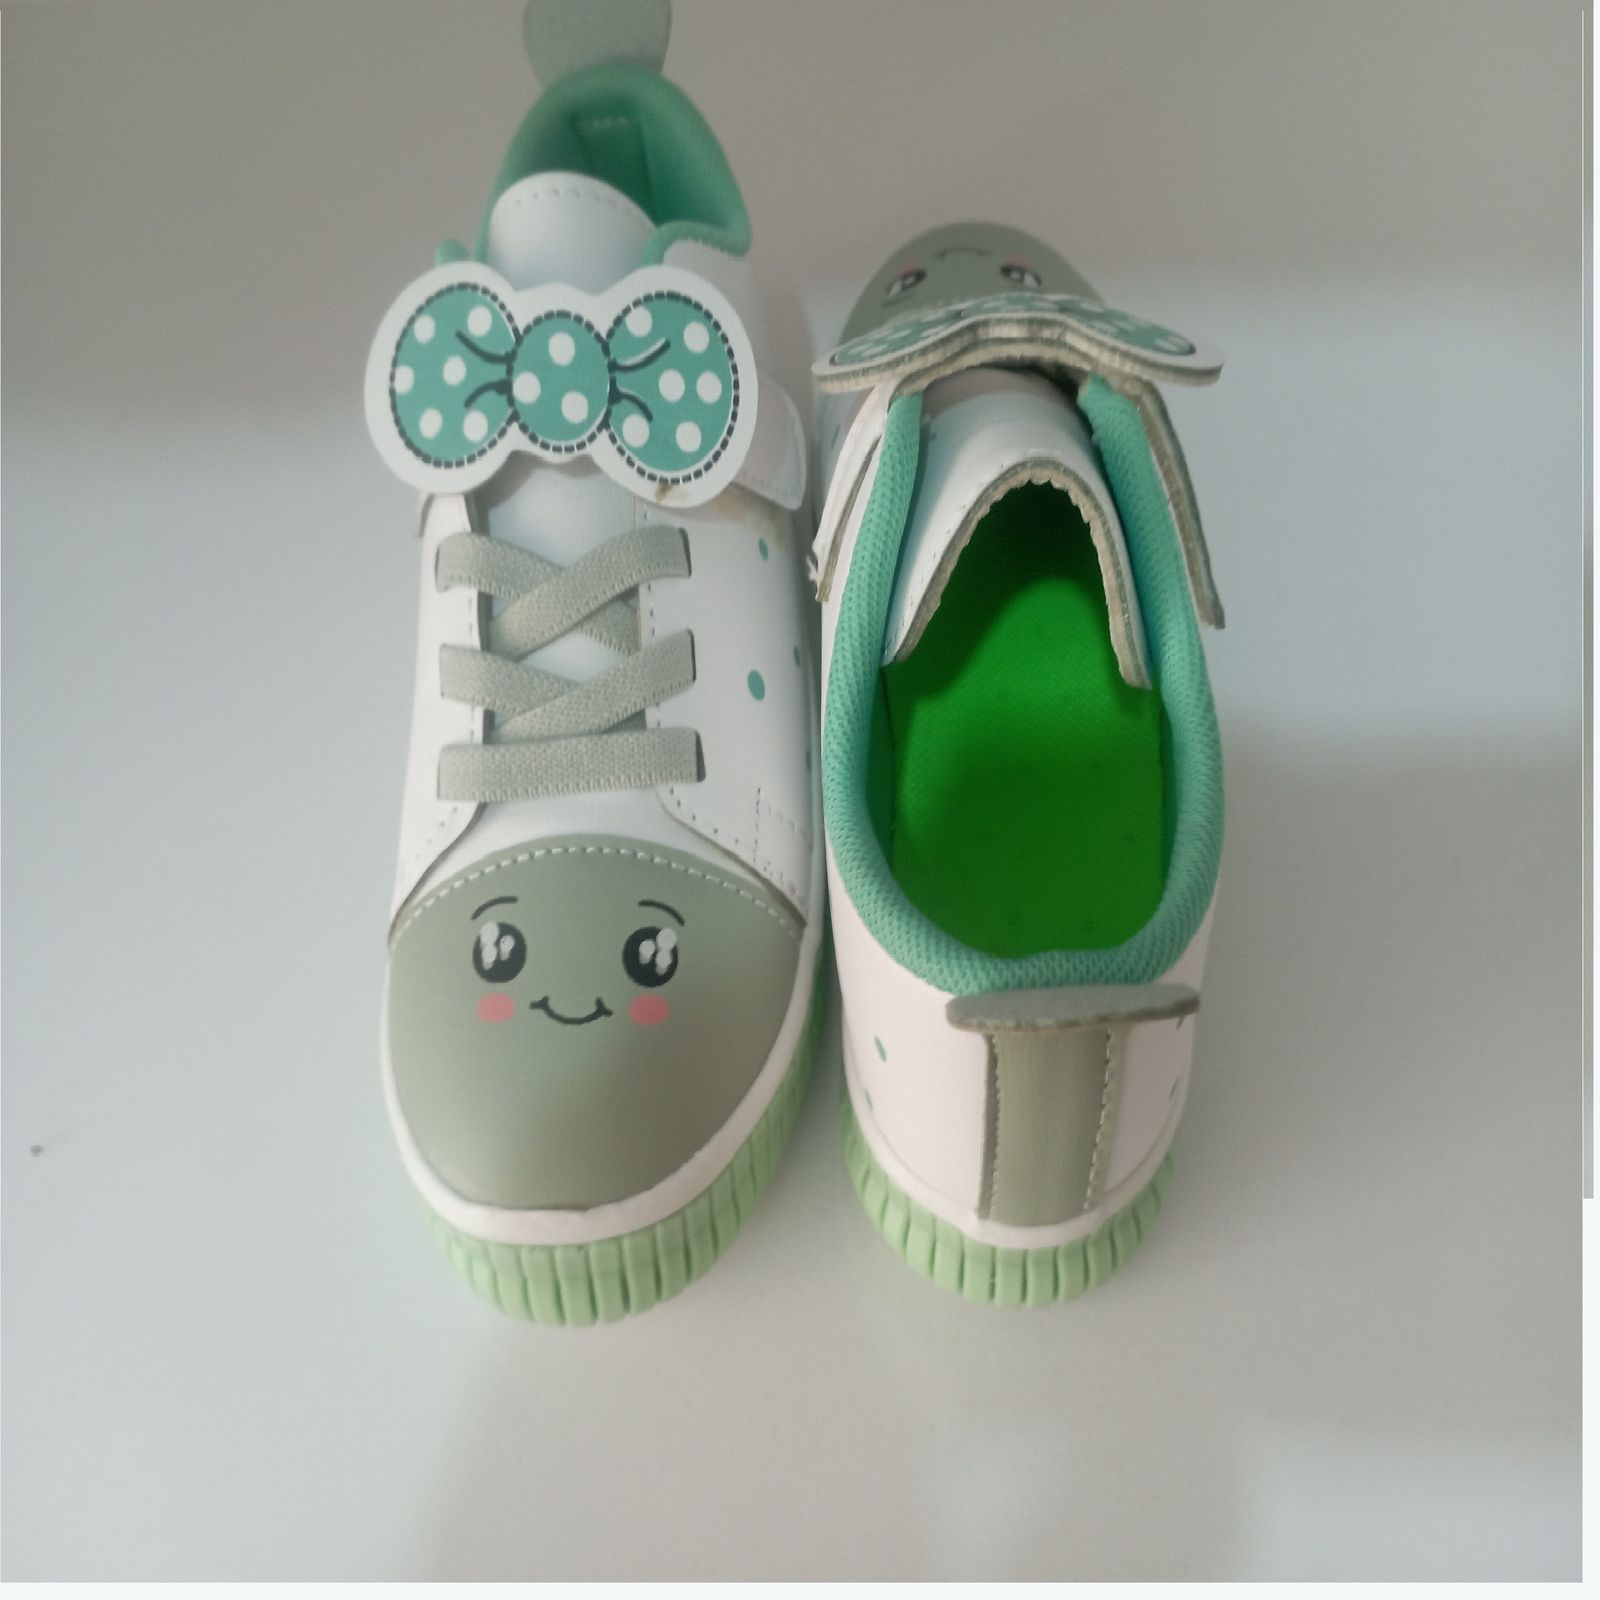  کفش راحتی بچگانه مدل پاپیونی کد 09 رنگ سبز  -  - 4